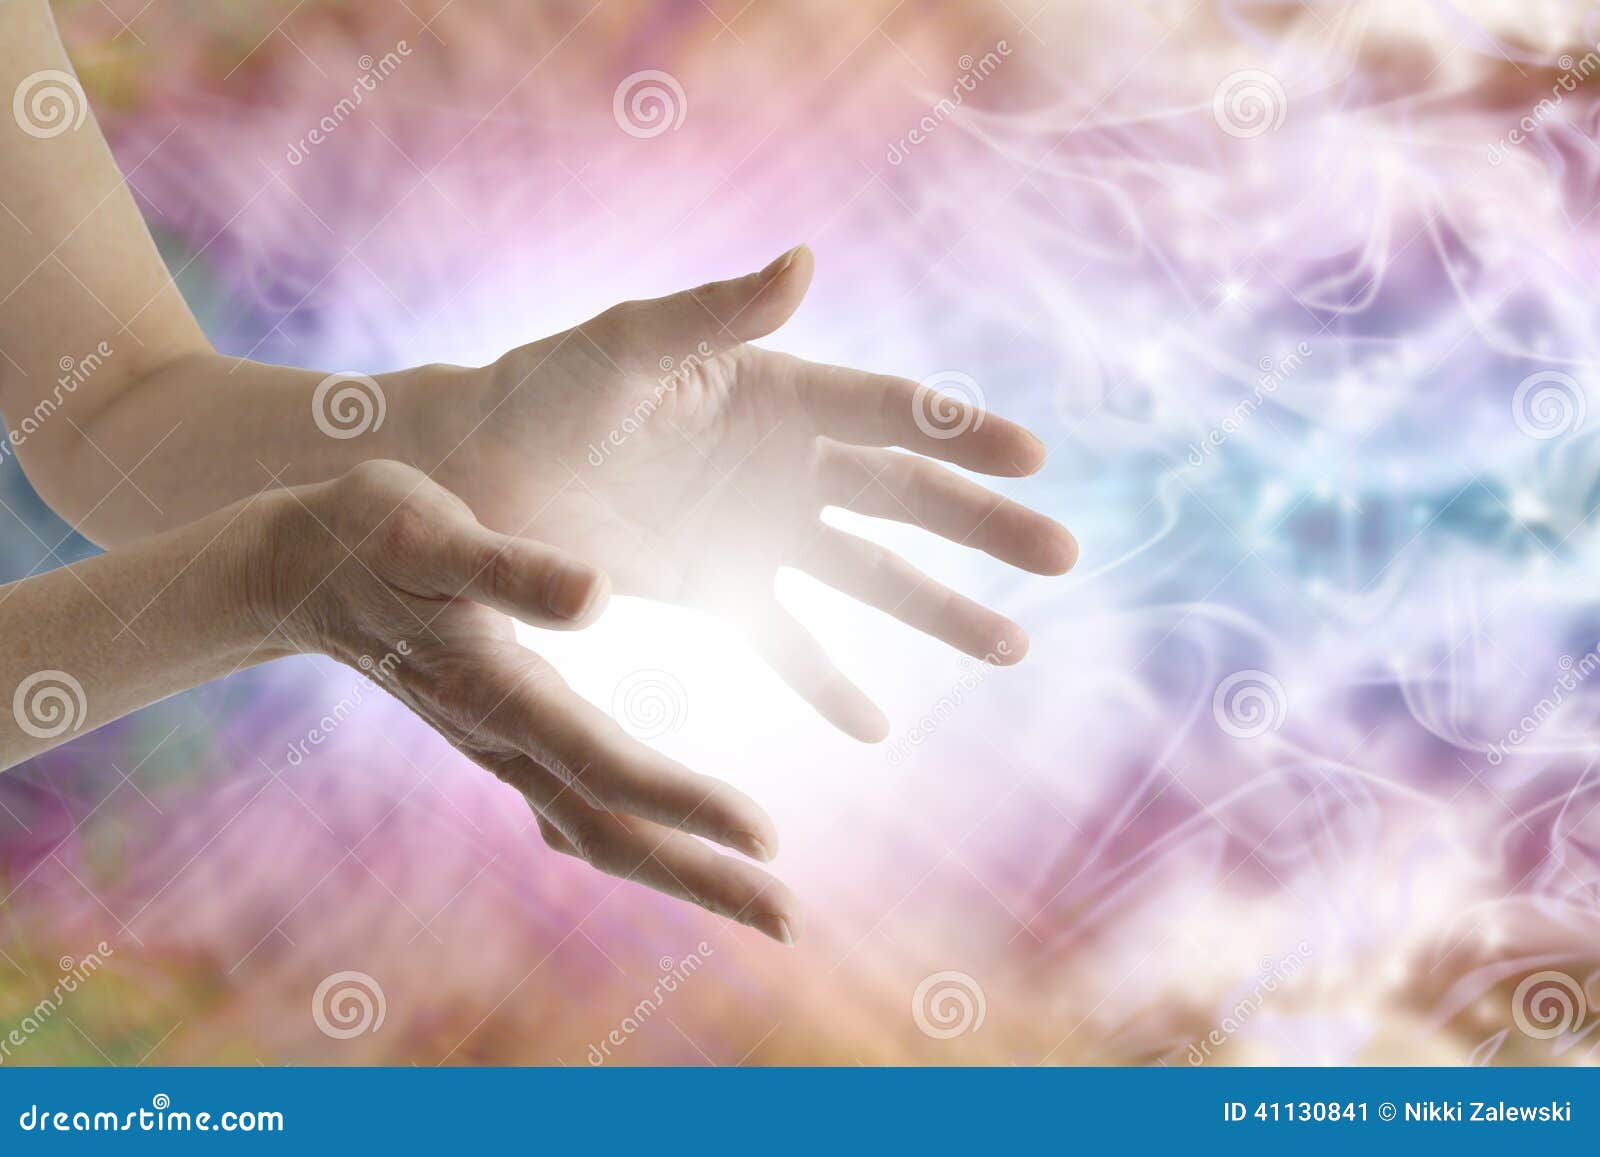 healing hands sending distant healing